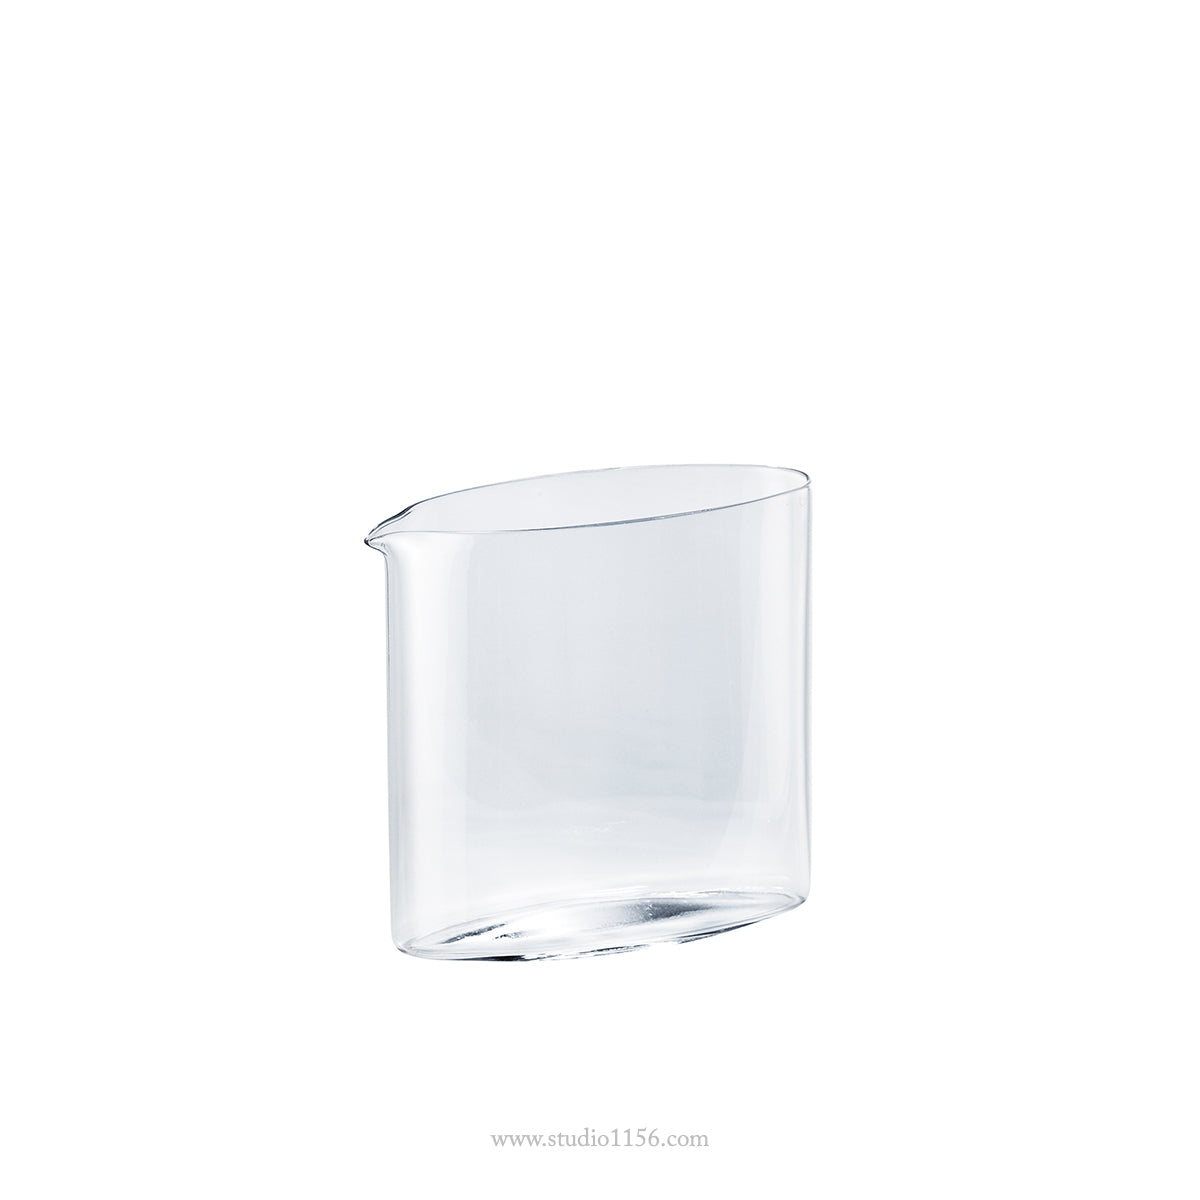 ガラス食器 オーバル片口酒器 160ml/290ml S(160ml) Yoshinuma-glass Studio1156